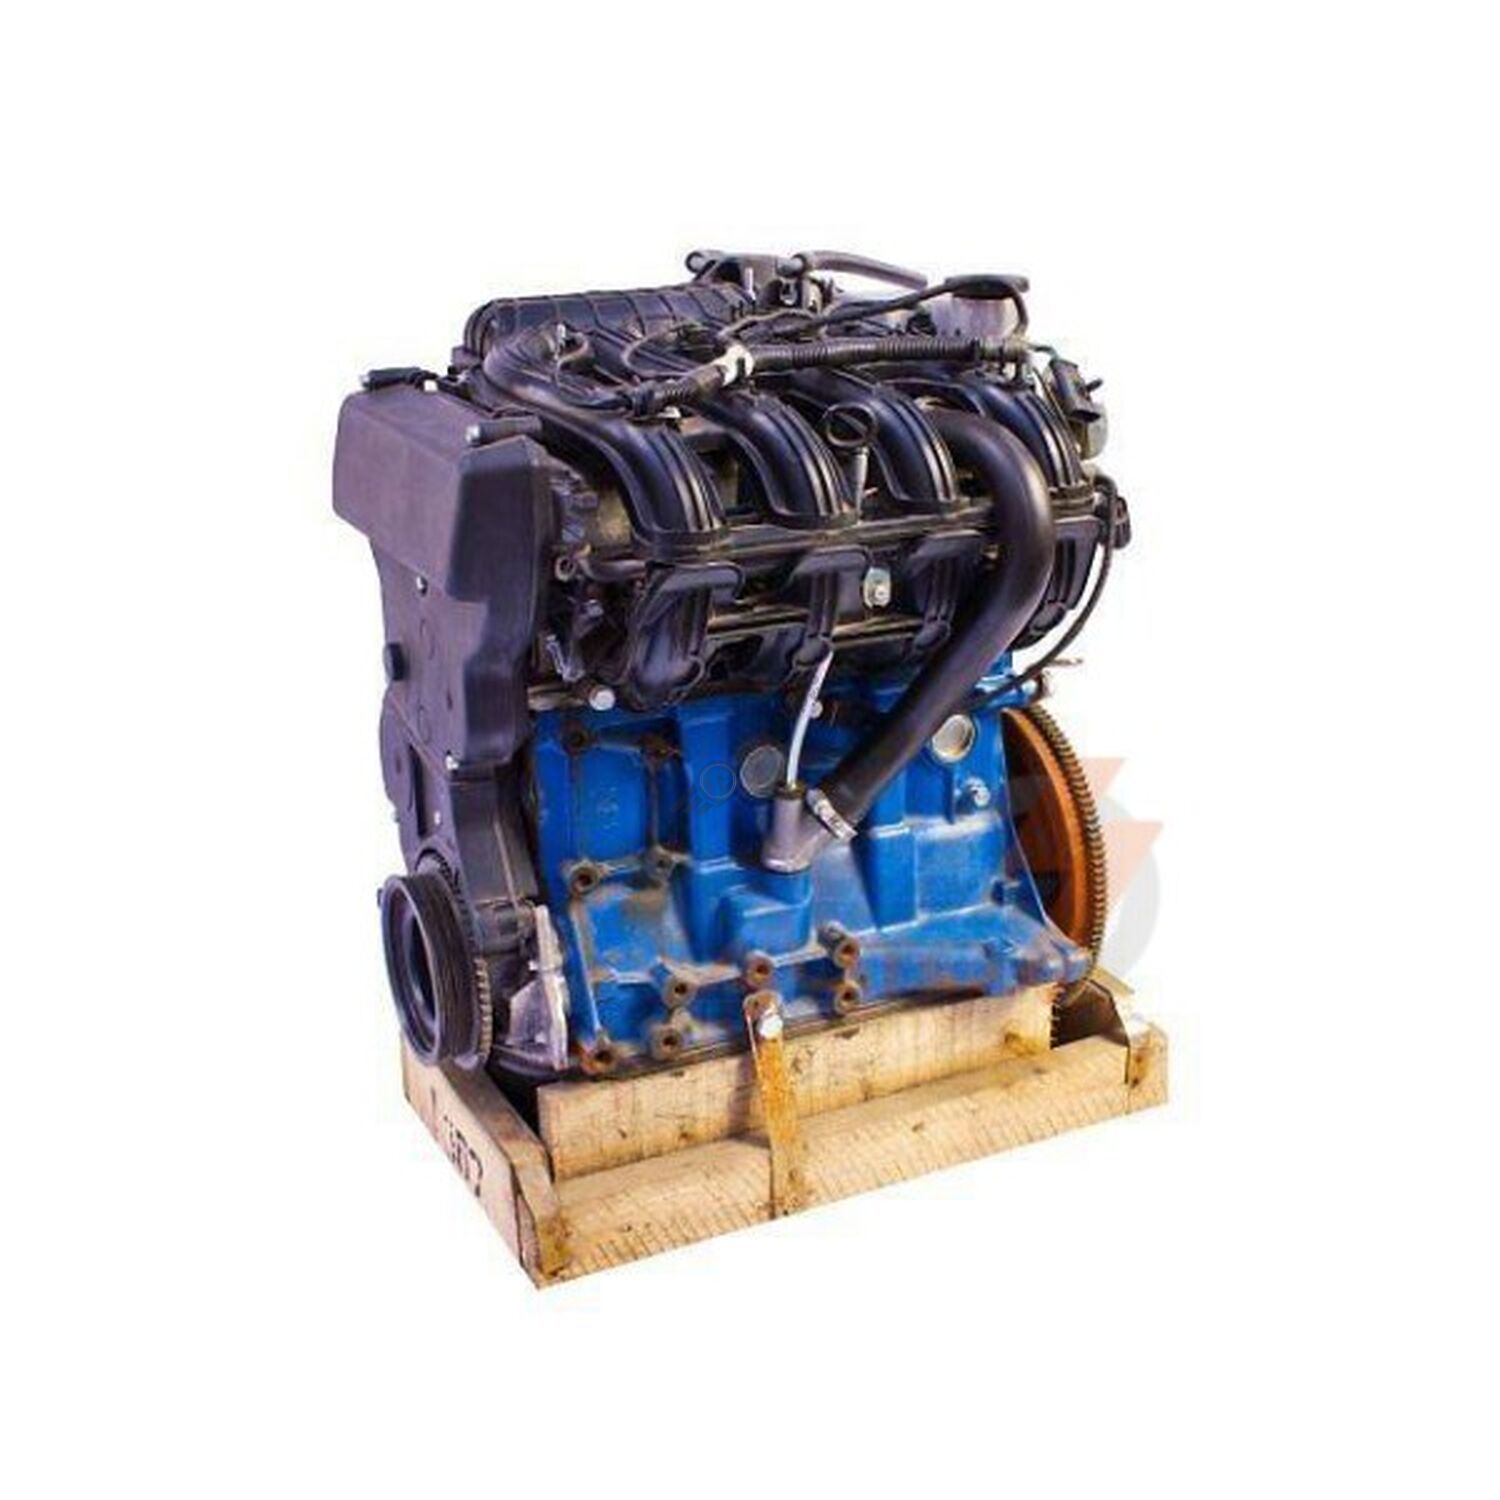 Двигатель калина 1.4 16. Мотор ВАЗ 11194. Двигатель 11194 1.4 16 клапанов. Двигатель ВАЗ 11194 1.4 16кл. Мотор 11194 мотор ВАЗ.